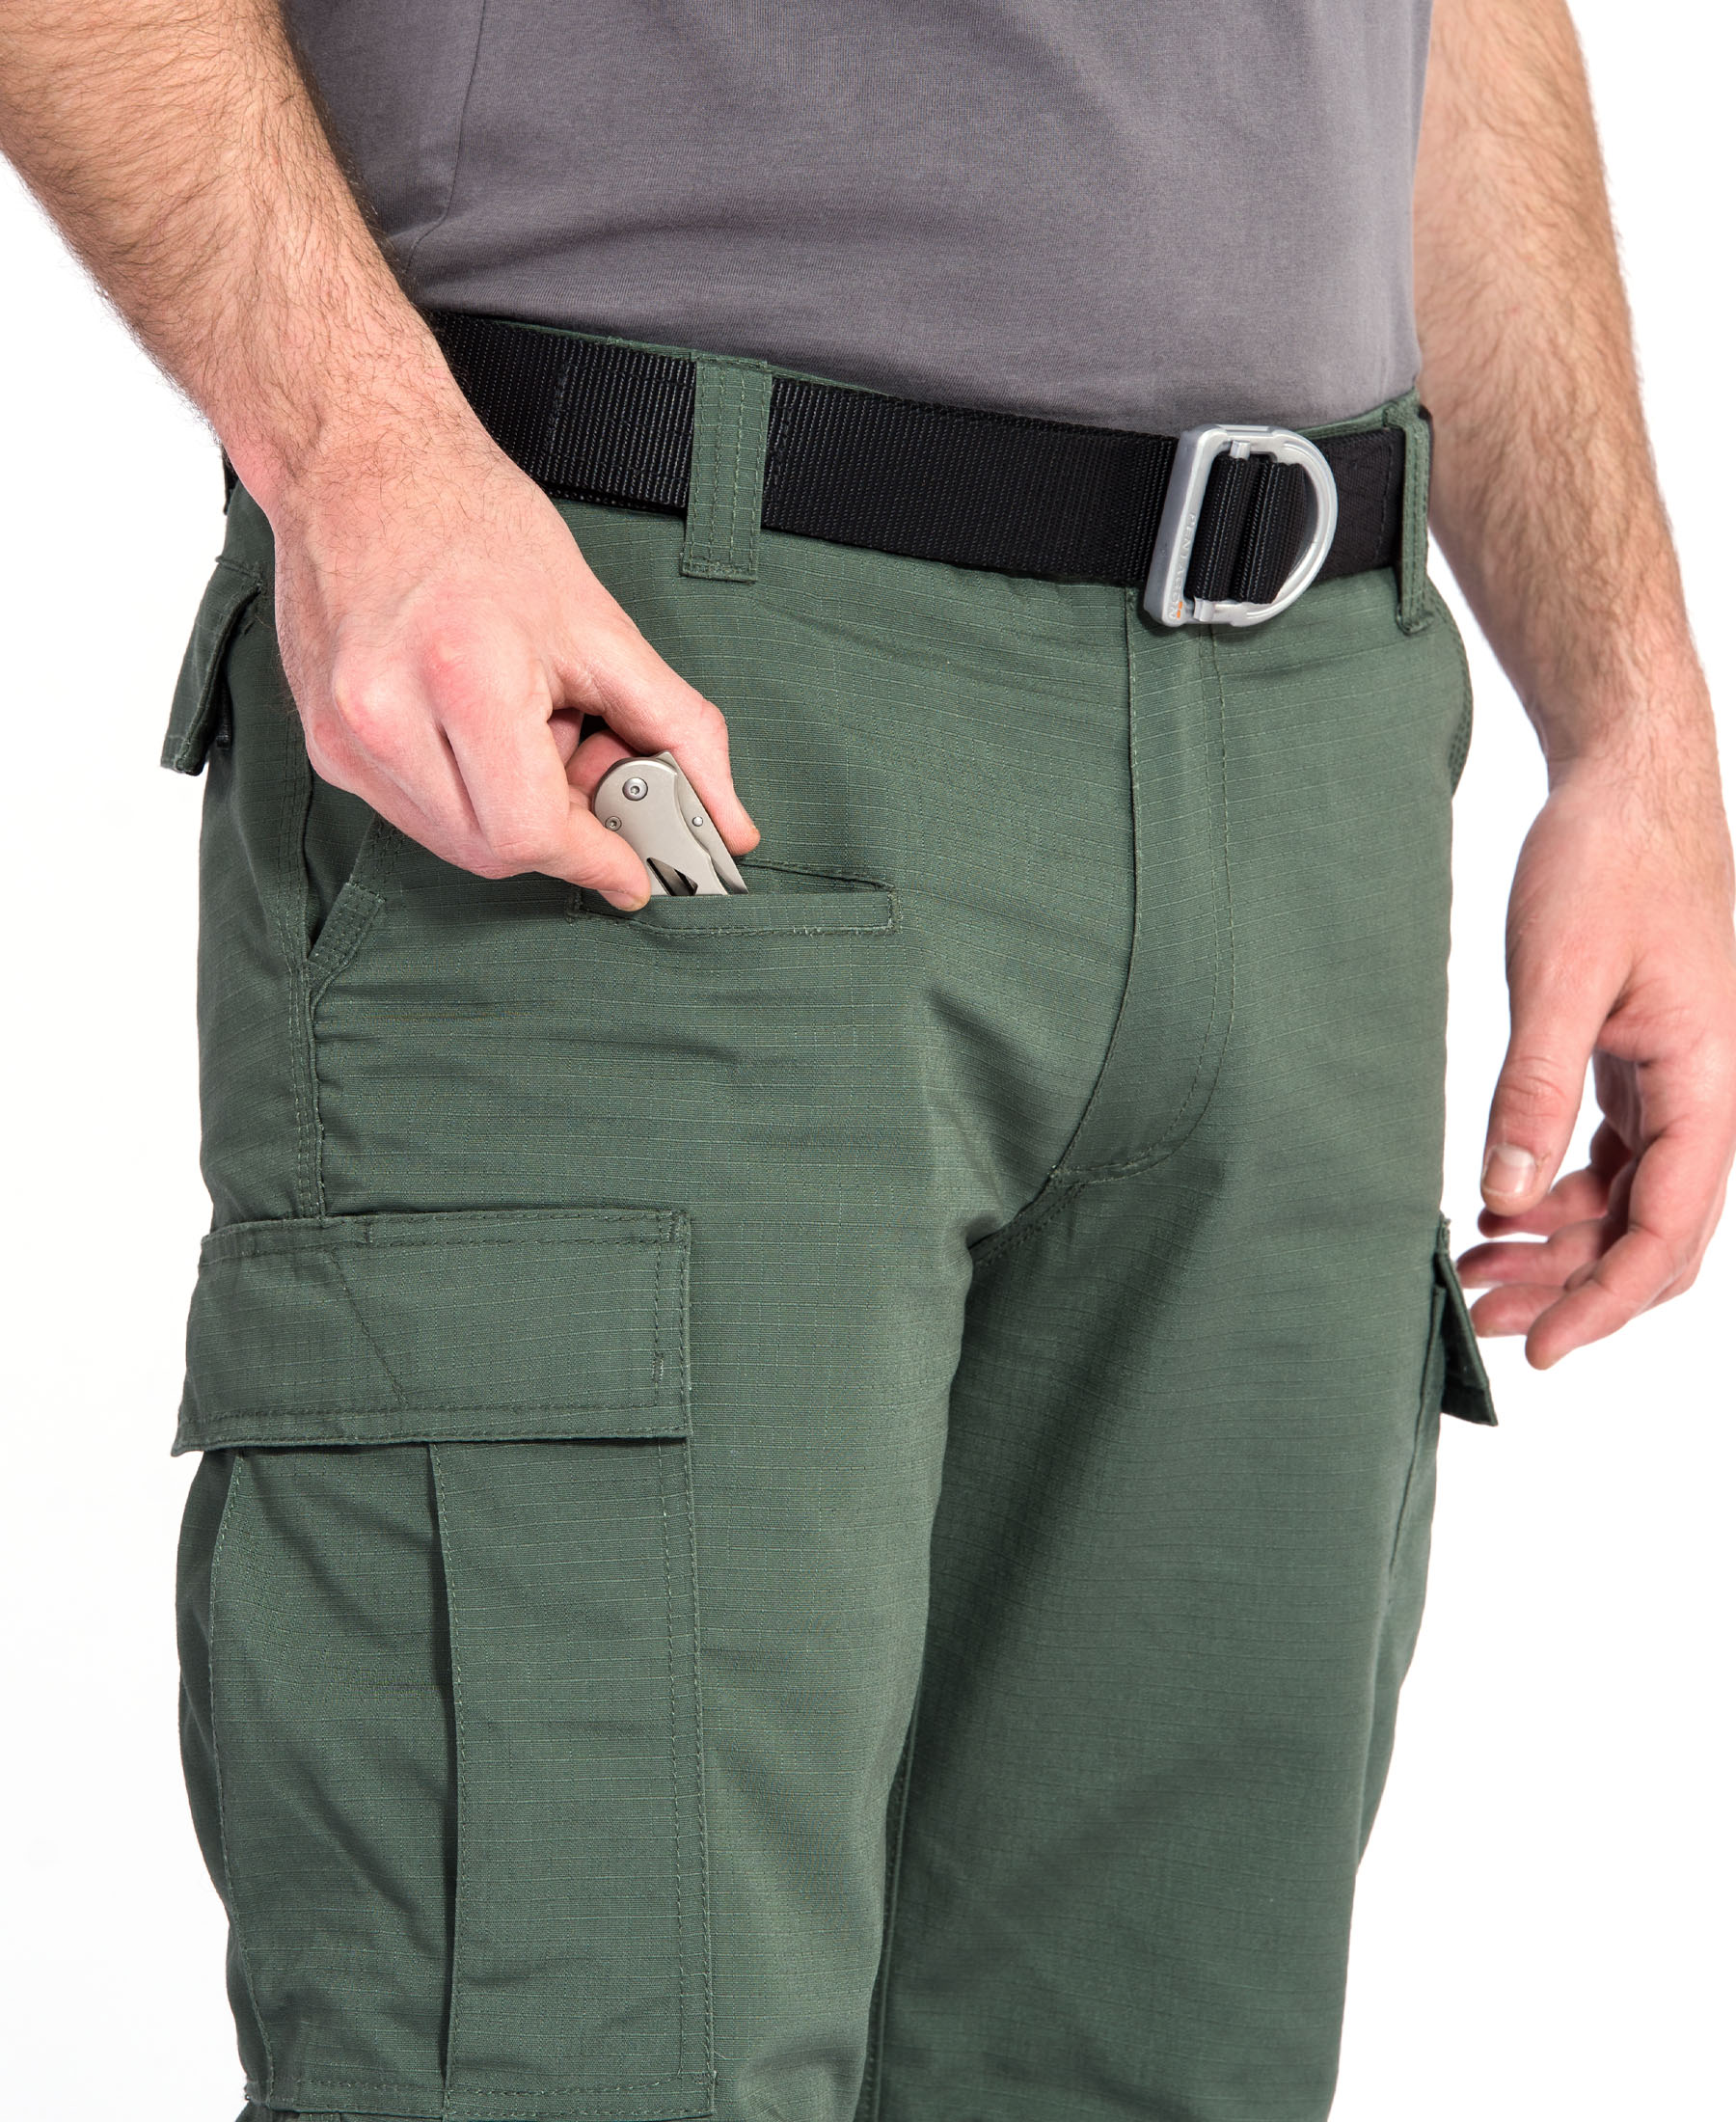 Kalhoty Pentagon BDU2.0 - camo green - Kliknutm na obrzek zavete